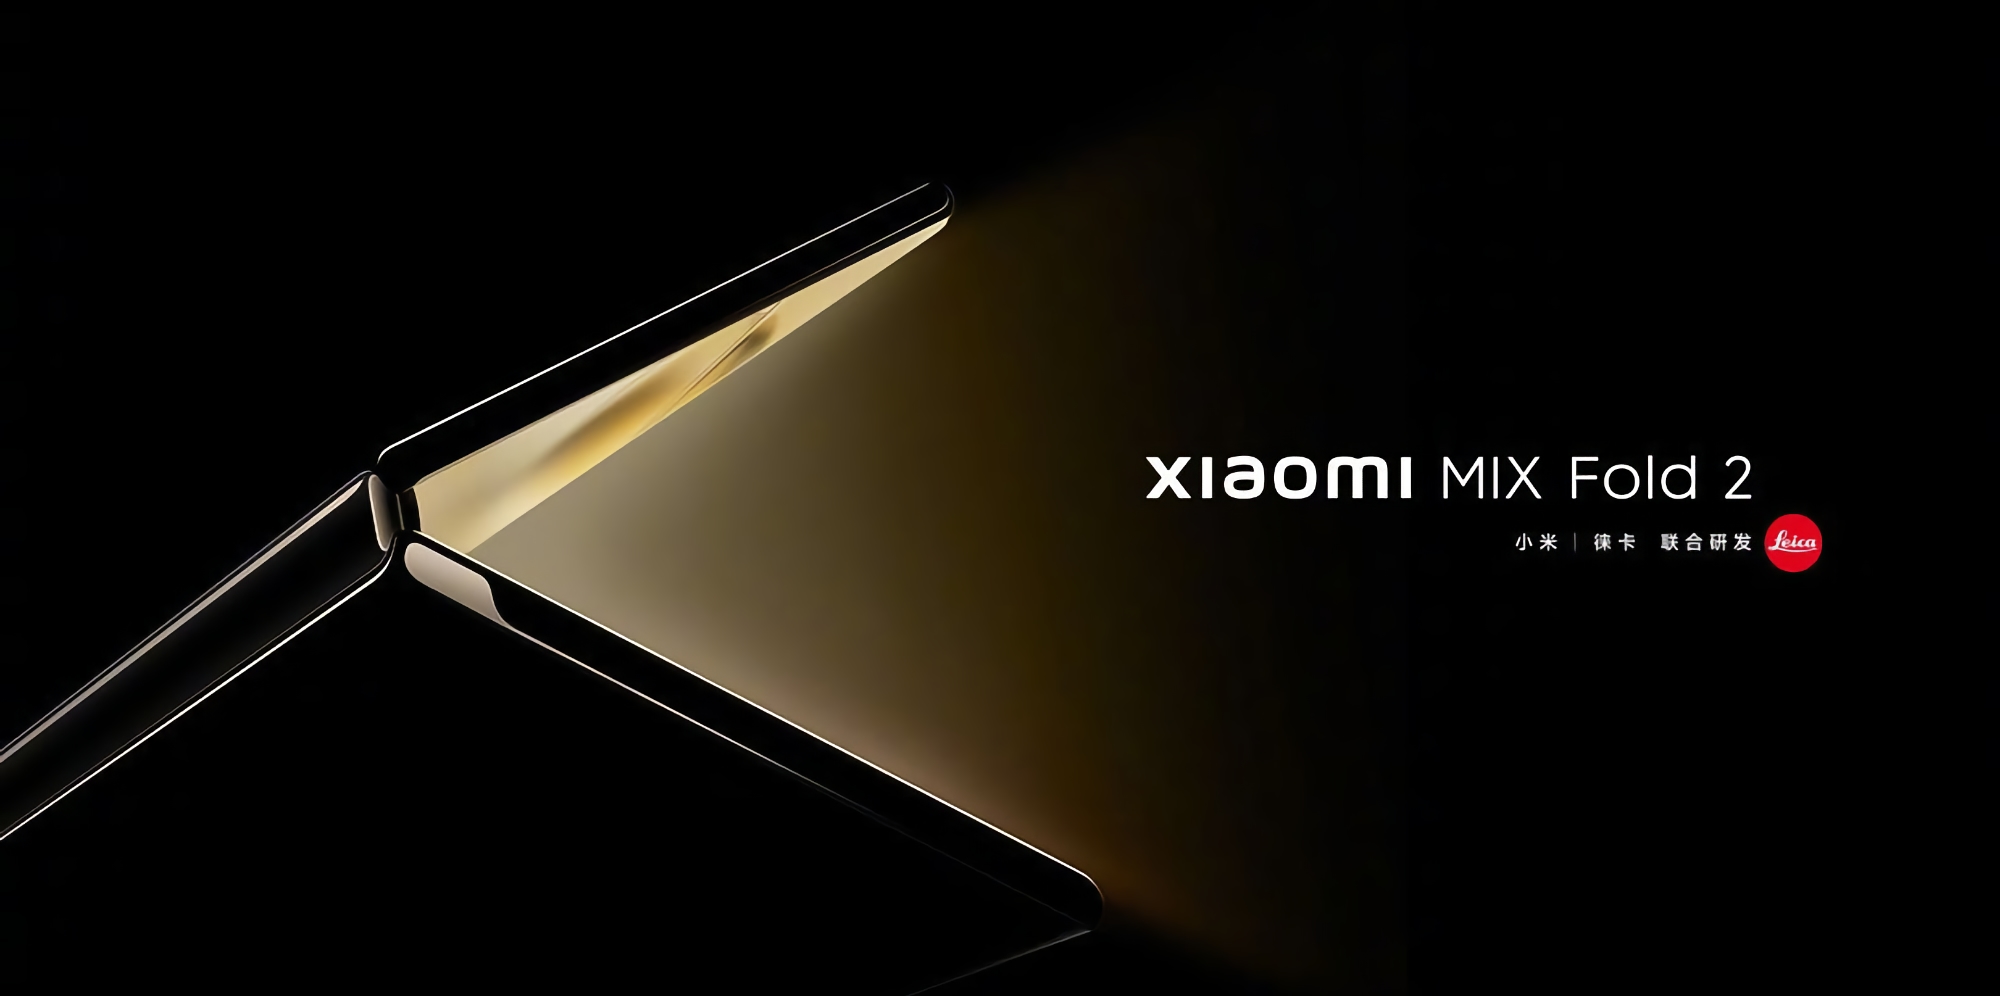 Xiaomi kündigte die Präsentation am 11. August an: Warten auf das faltbare Smartphone Xiaomi MIX Fold 2, ein Tablet Xiaomi Pad 5 Pro 12.4 und TWS-Kopfhörer Xiaomi Buds 4 Pro